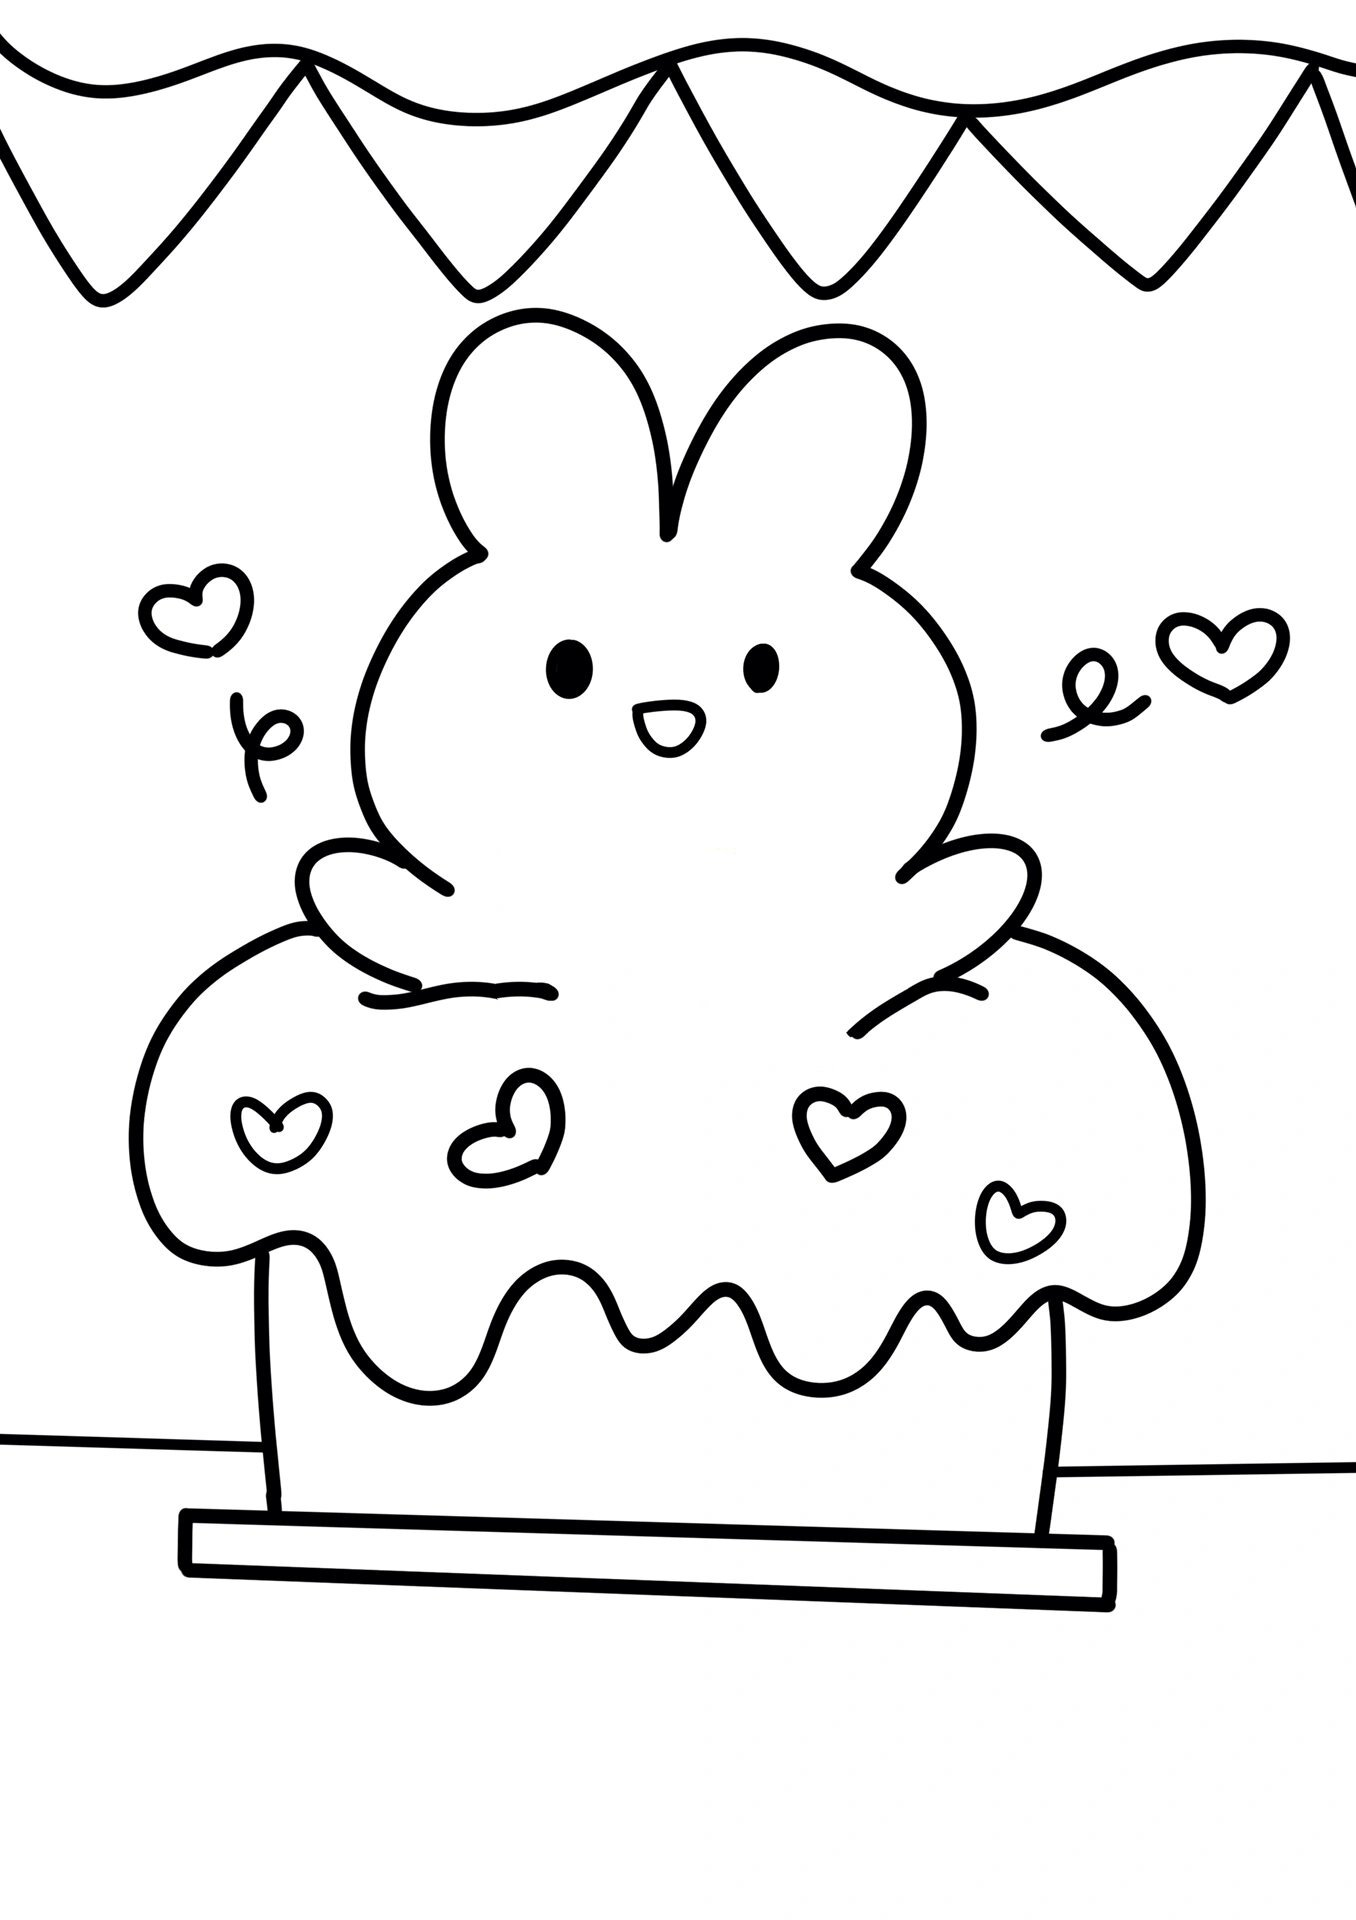 生日蛋糕儿童创意画 小兔子 简单 线稿